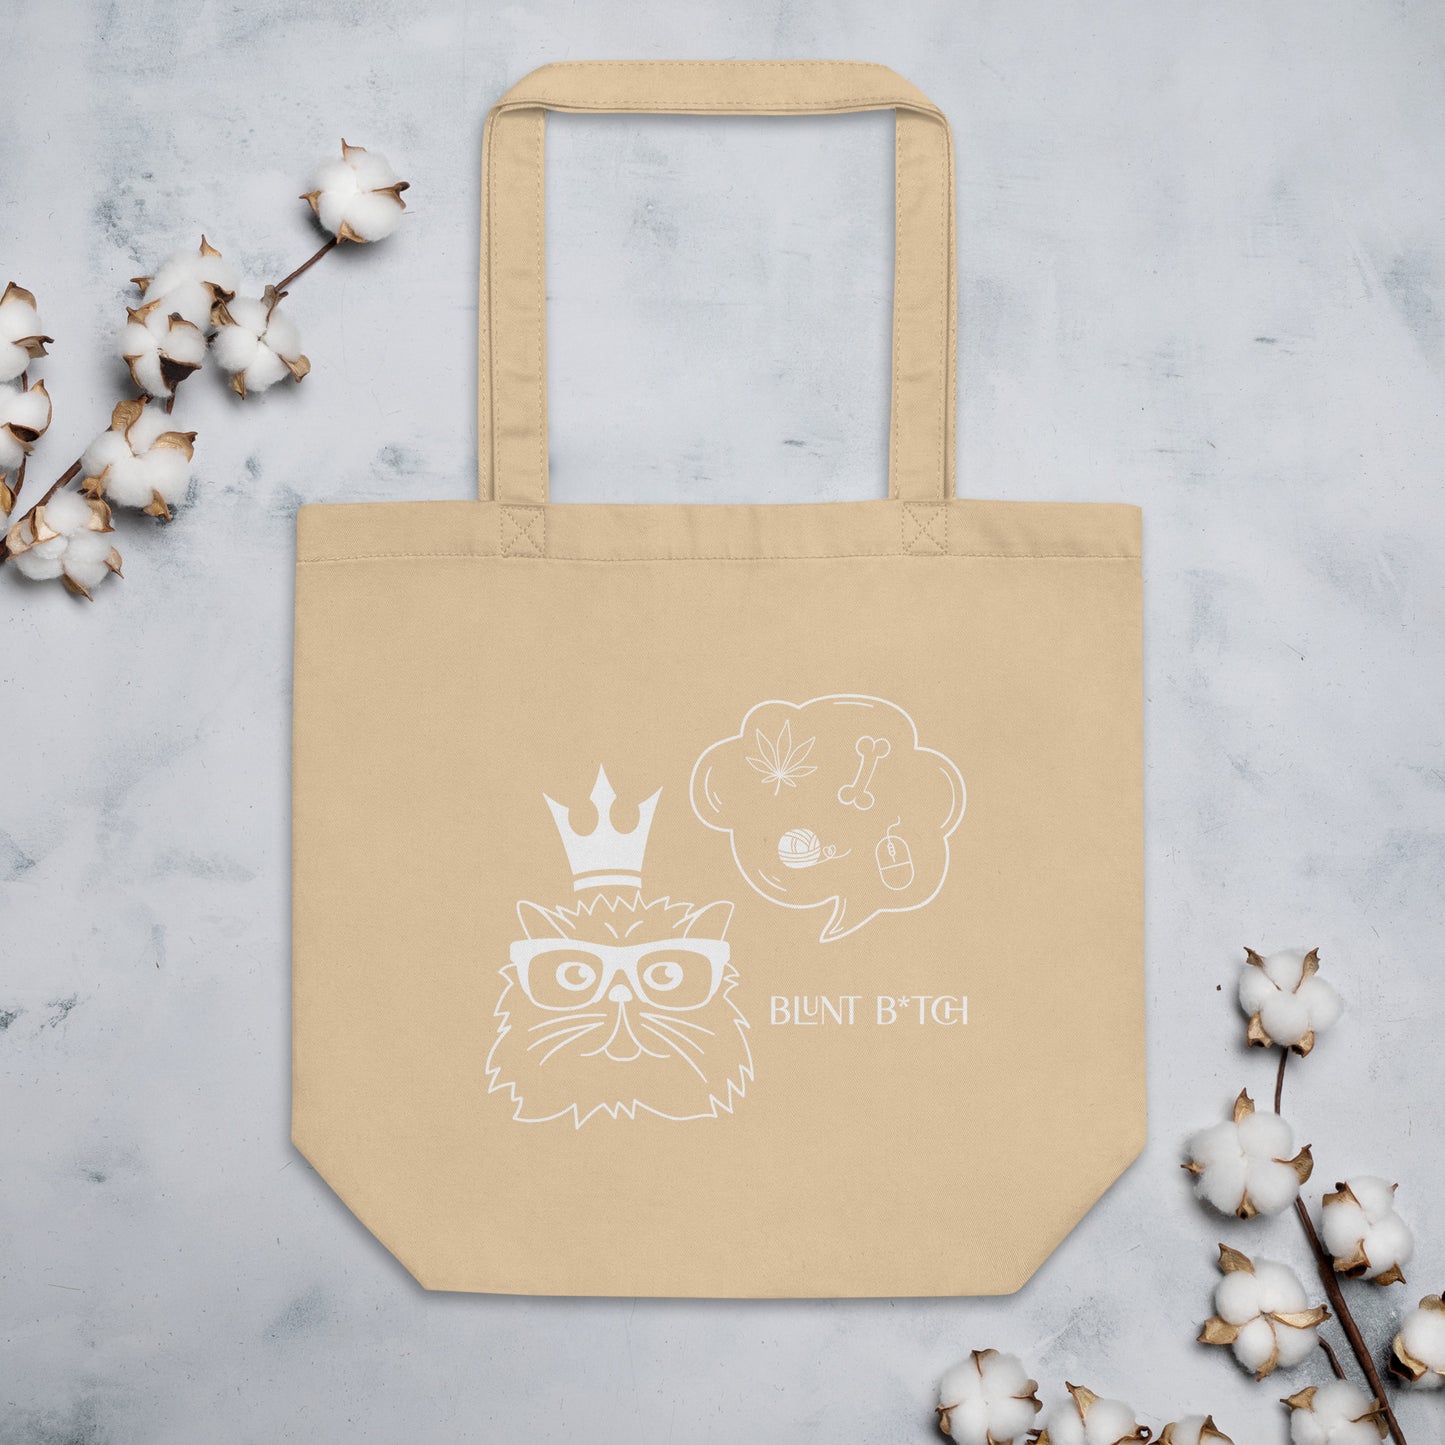 Eco Cute Cat Stoner 420 Tote Bag / Stoner Grocery Bag